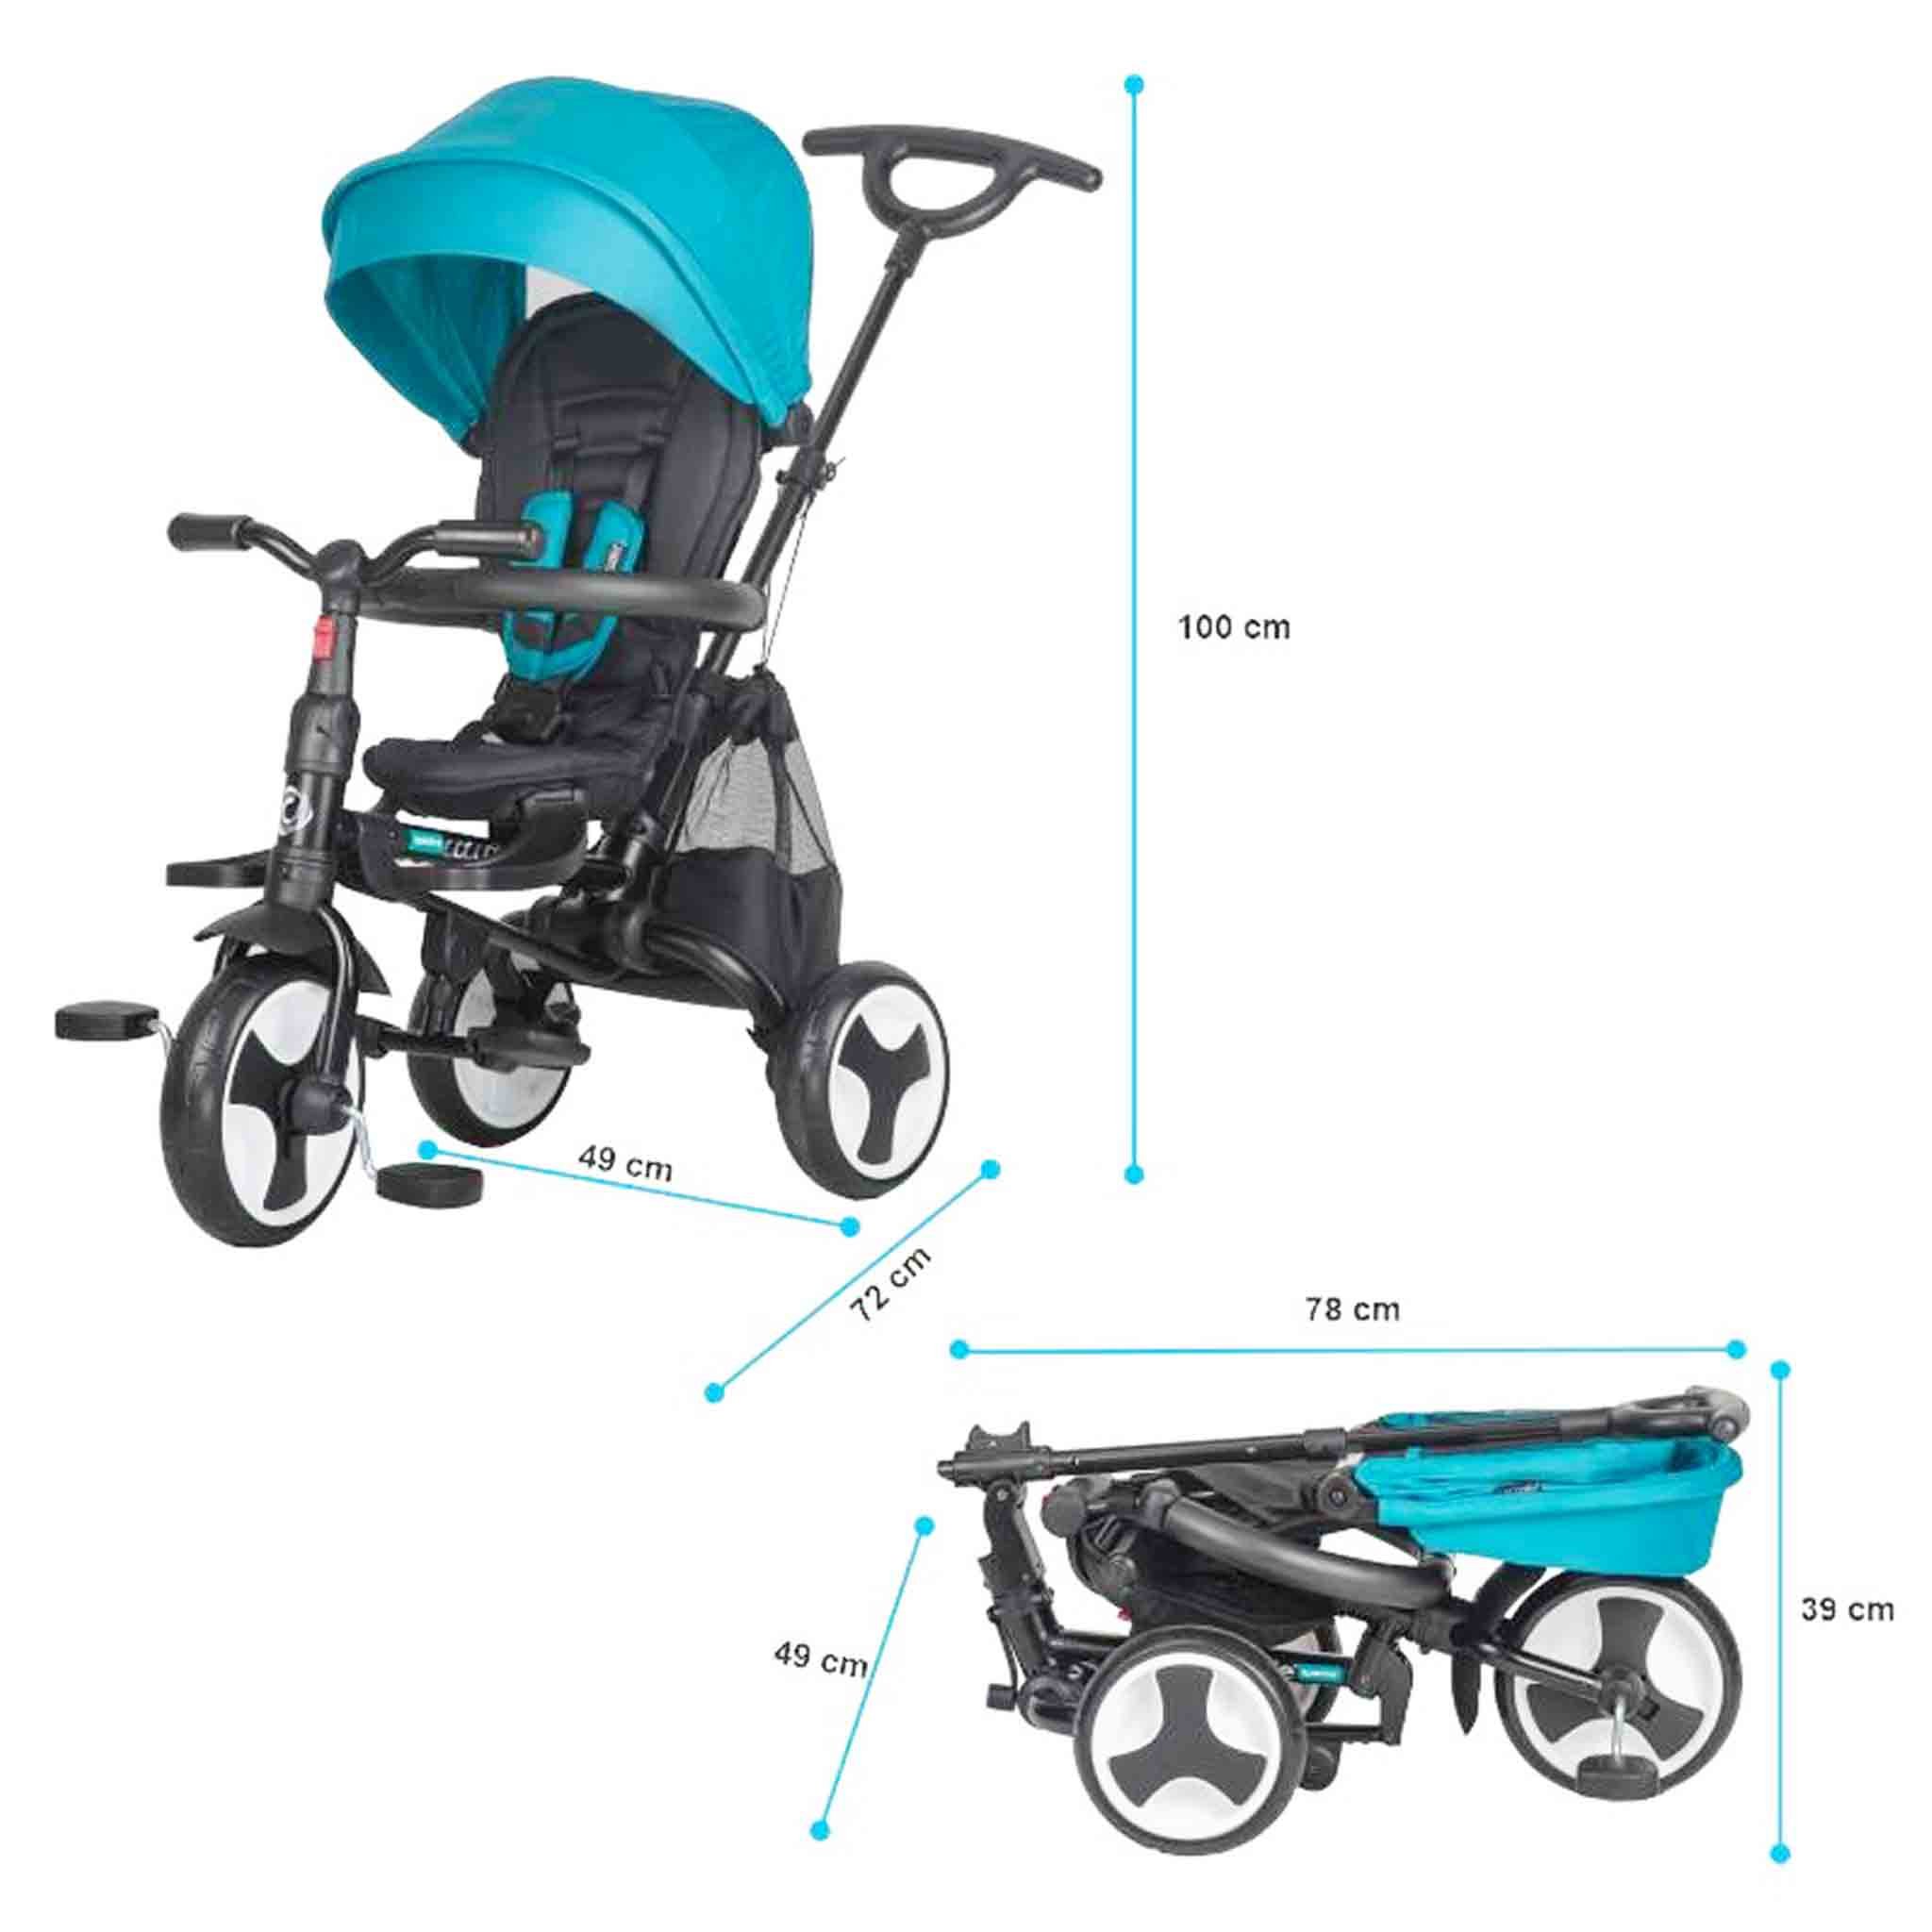 triciclo-spettro-coccolle-spectra-pieghevole-6-in-1-reclinabile-girevole-fronte-strada-mamma-bambino-ruote.jpg